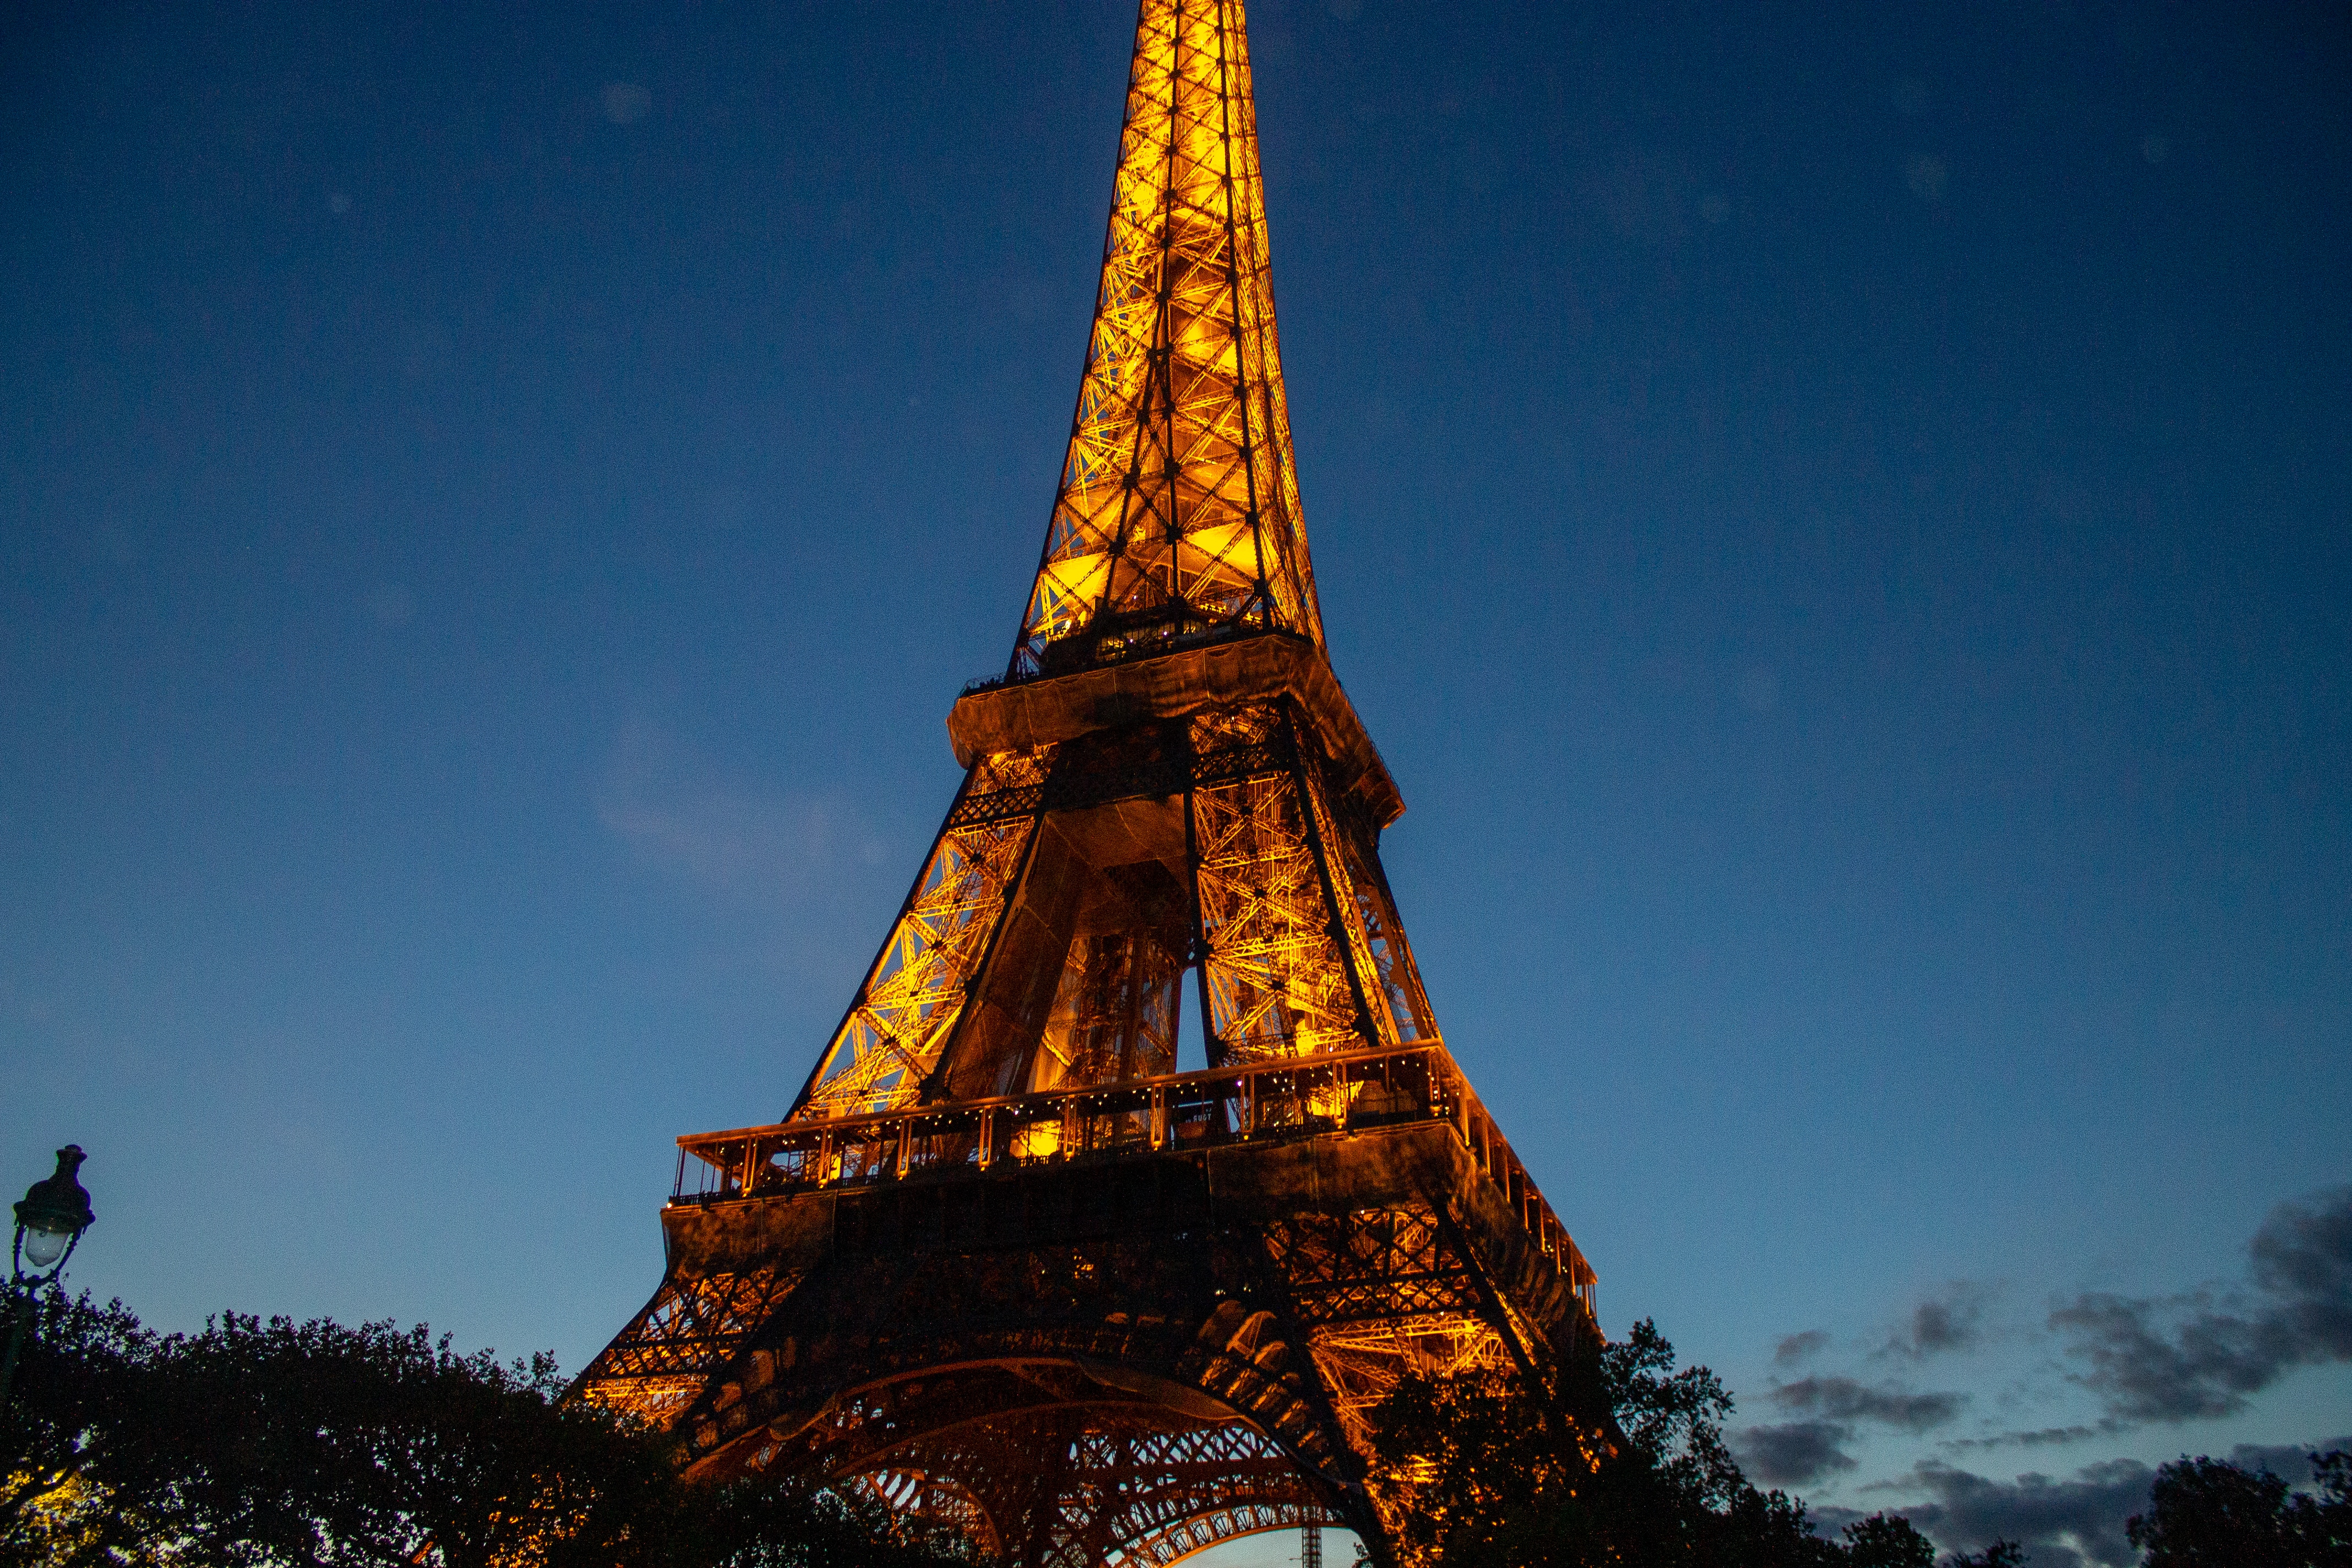 Eiffel towet at night